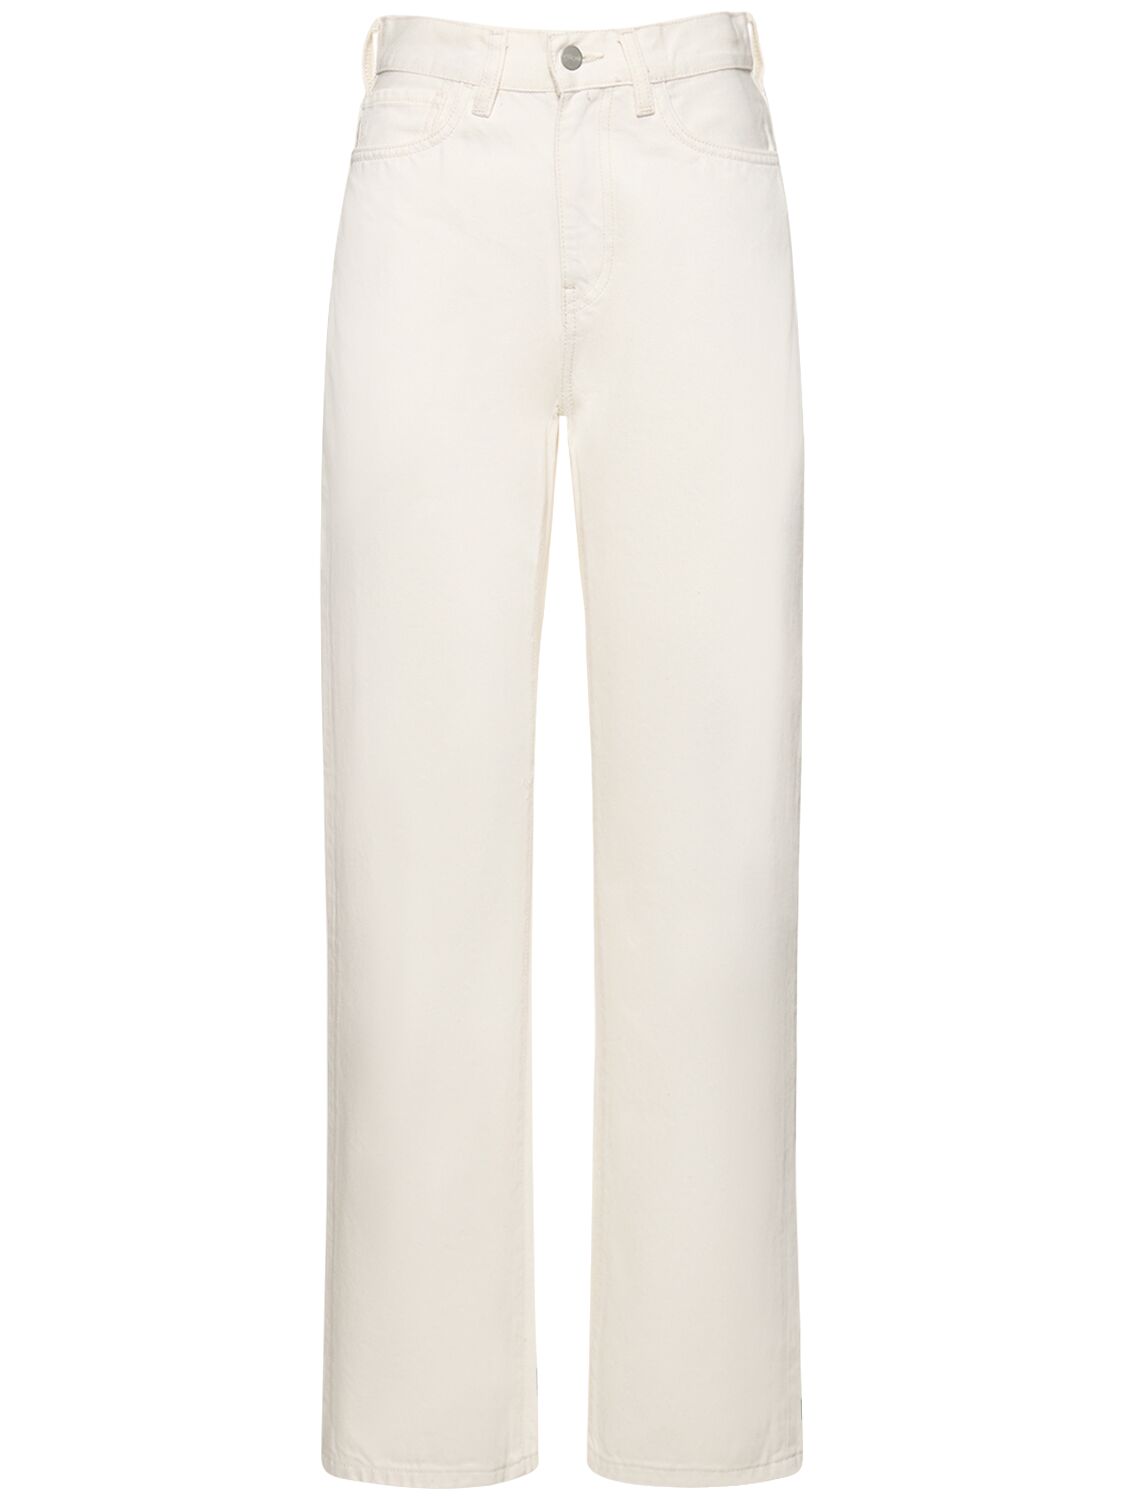 Pantalon Droit Taille Haute Noxon - CARHARTT WIP - Modalova